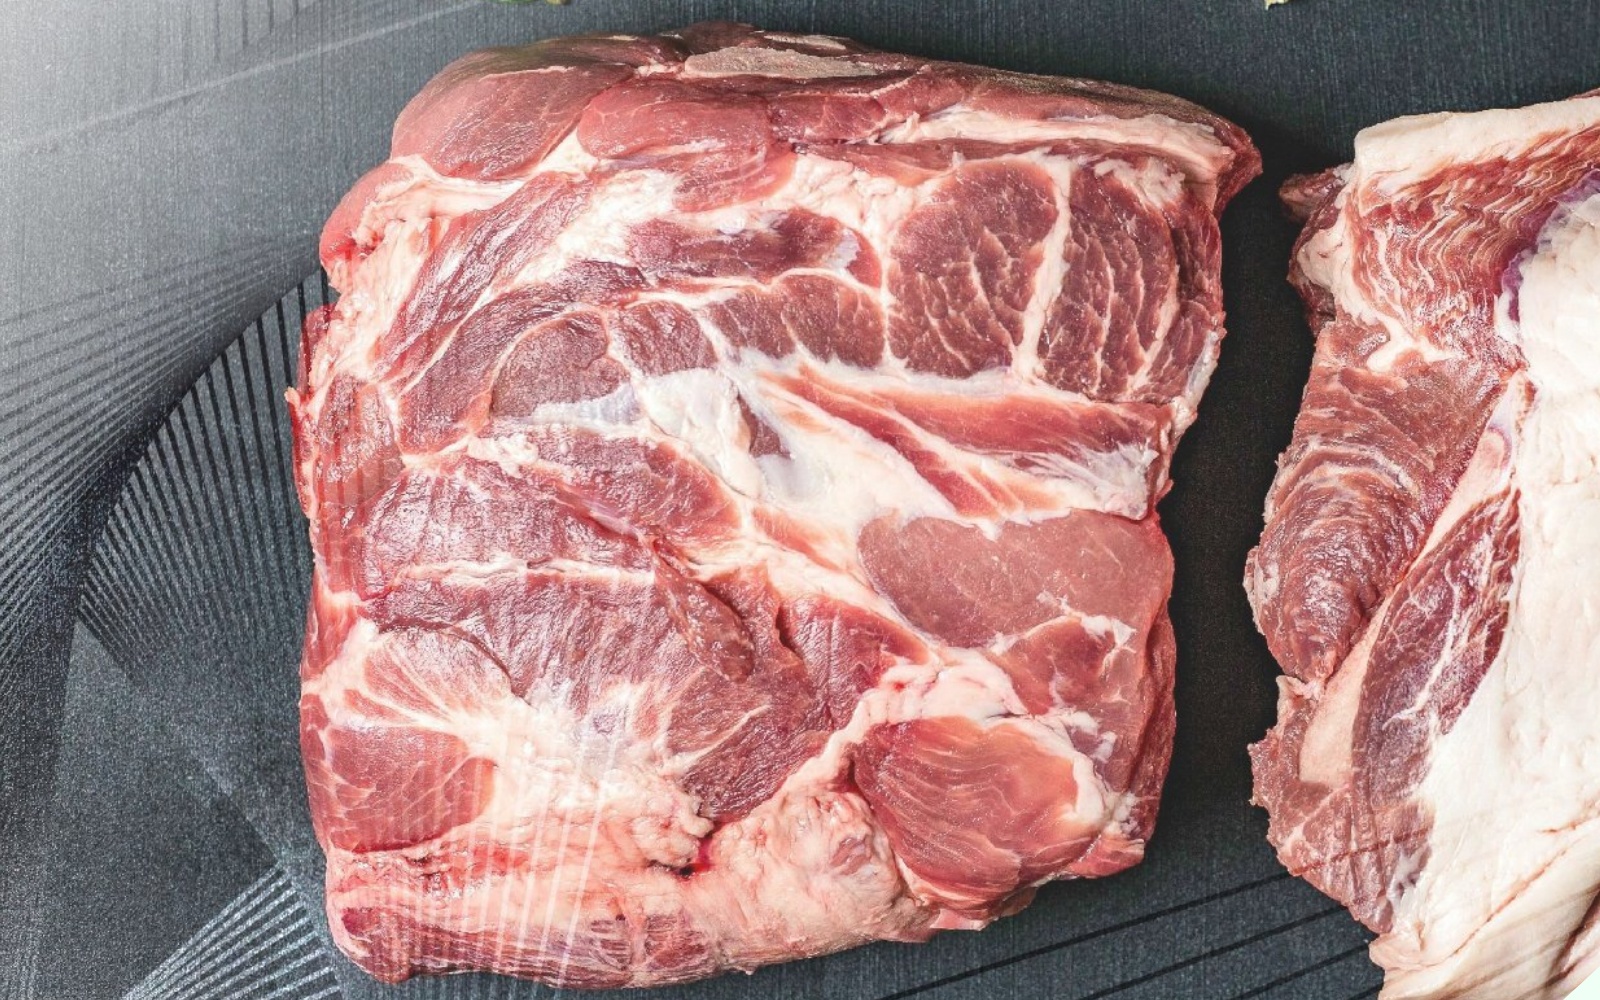 Khi mua thịt lợn cứ nhìn vào 3 điểm này là biết thịt “sạch” hay “bẩn”, nhớ kỹ để không bị thiệt - 5